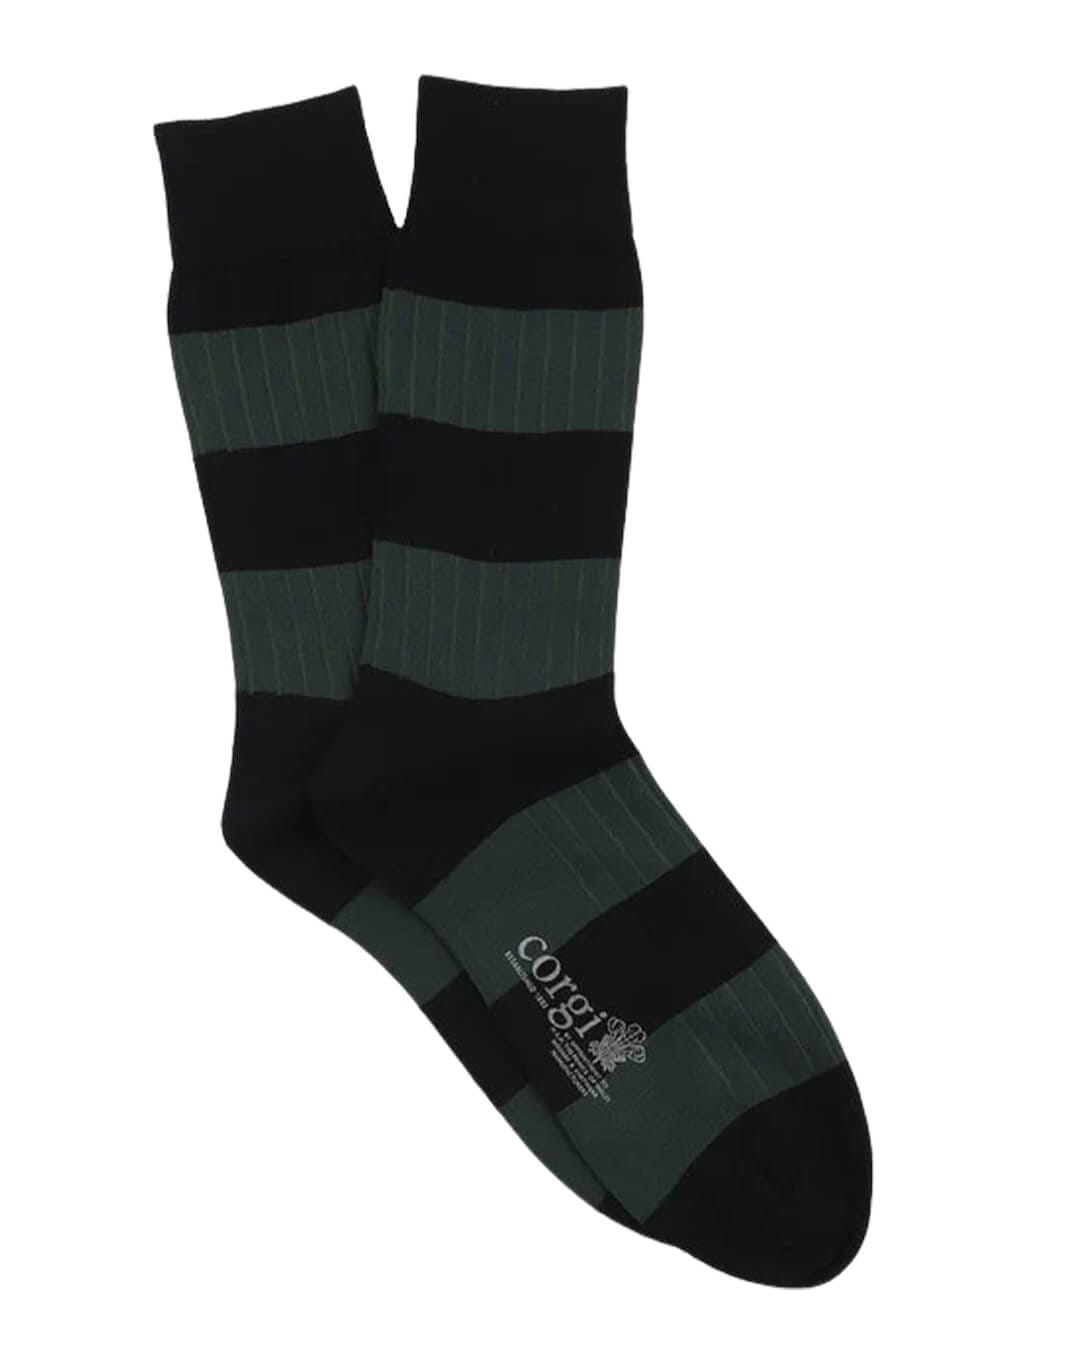 Corgi Socks Corgi Rugby Striped Green Socks